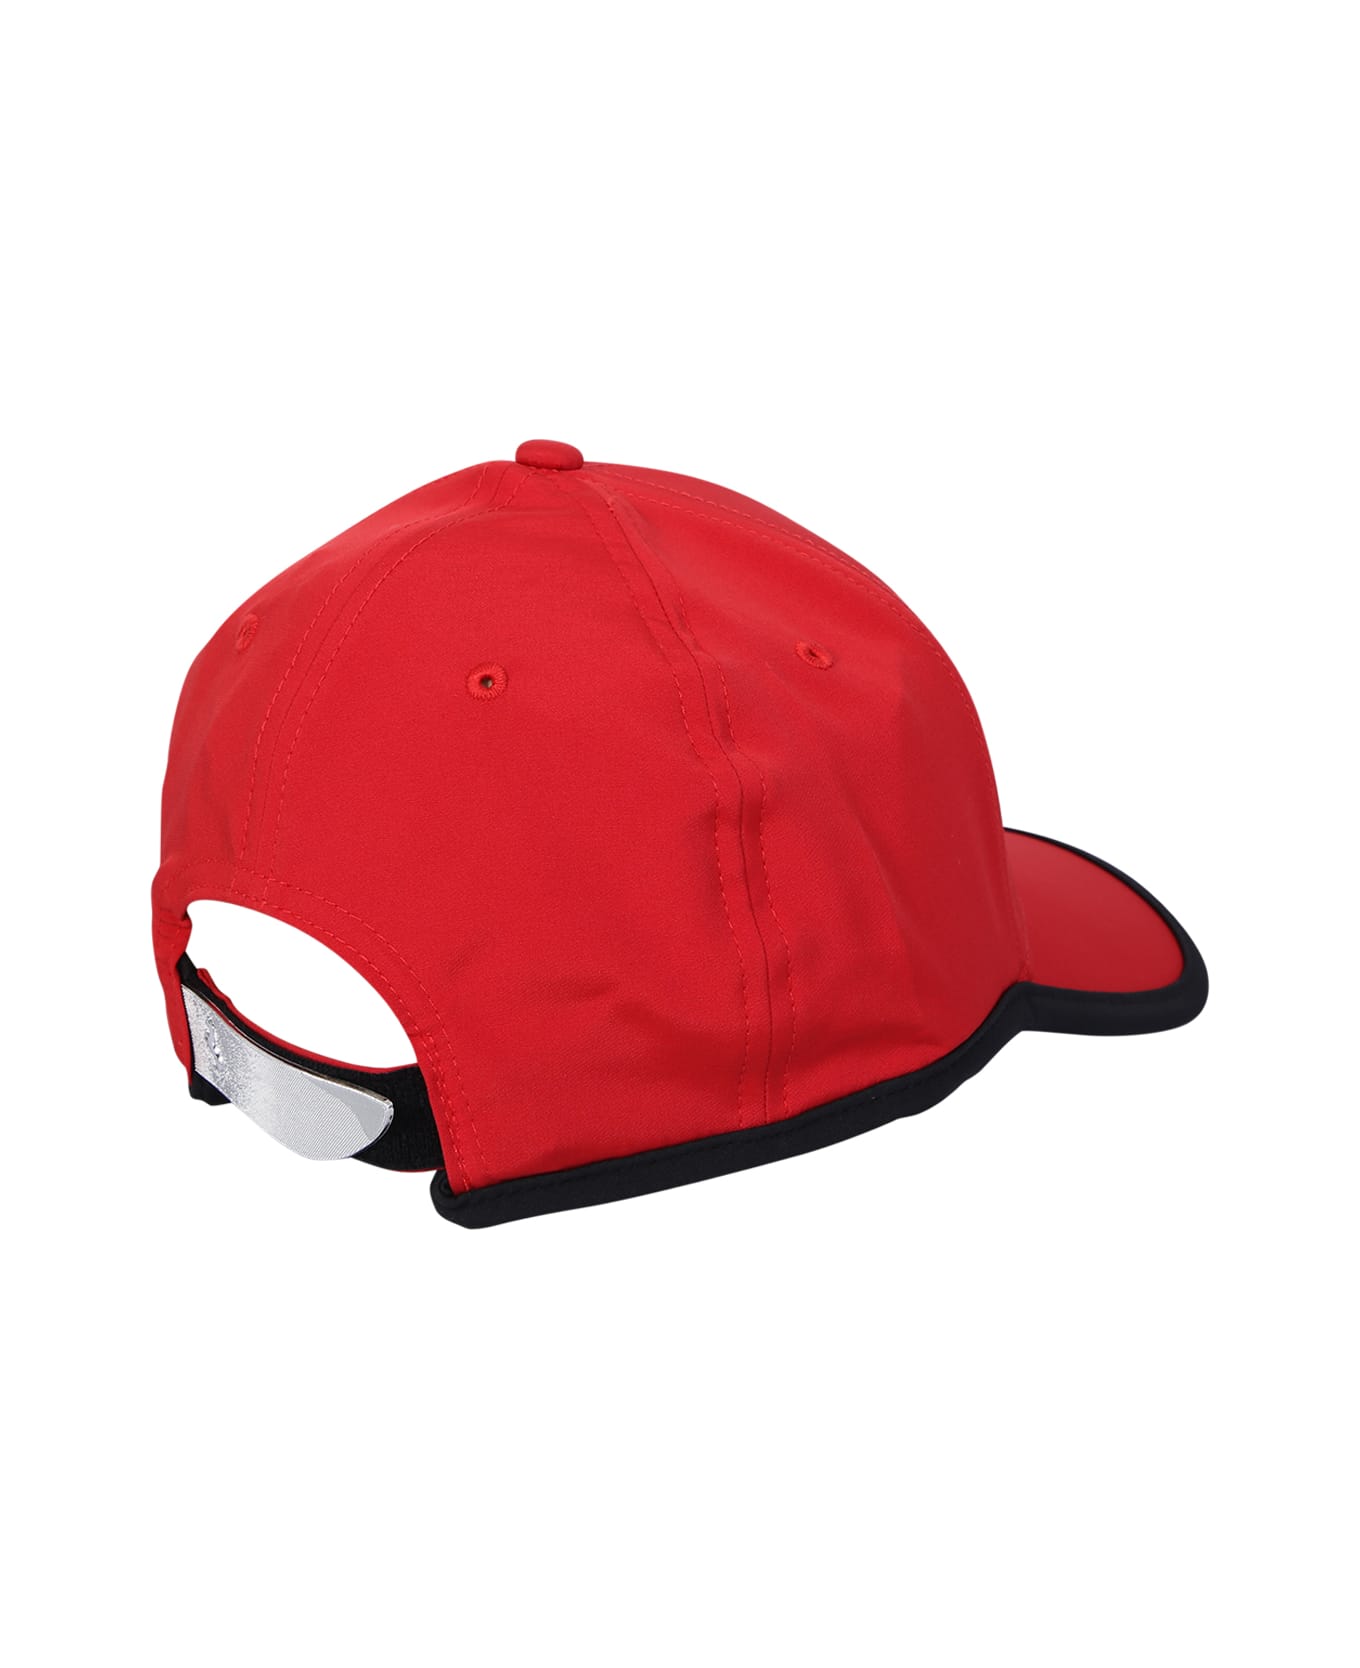 Ferrari Bright Red Cap - Red 帽子